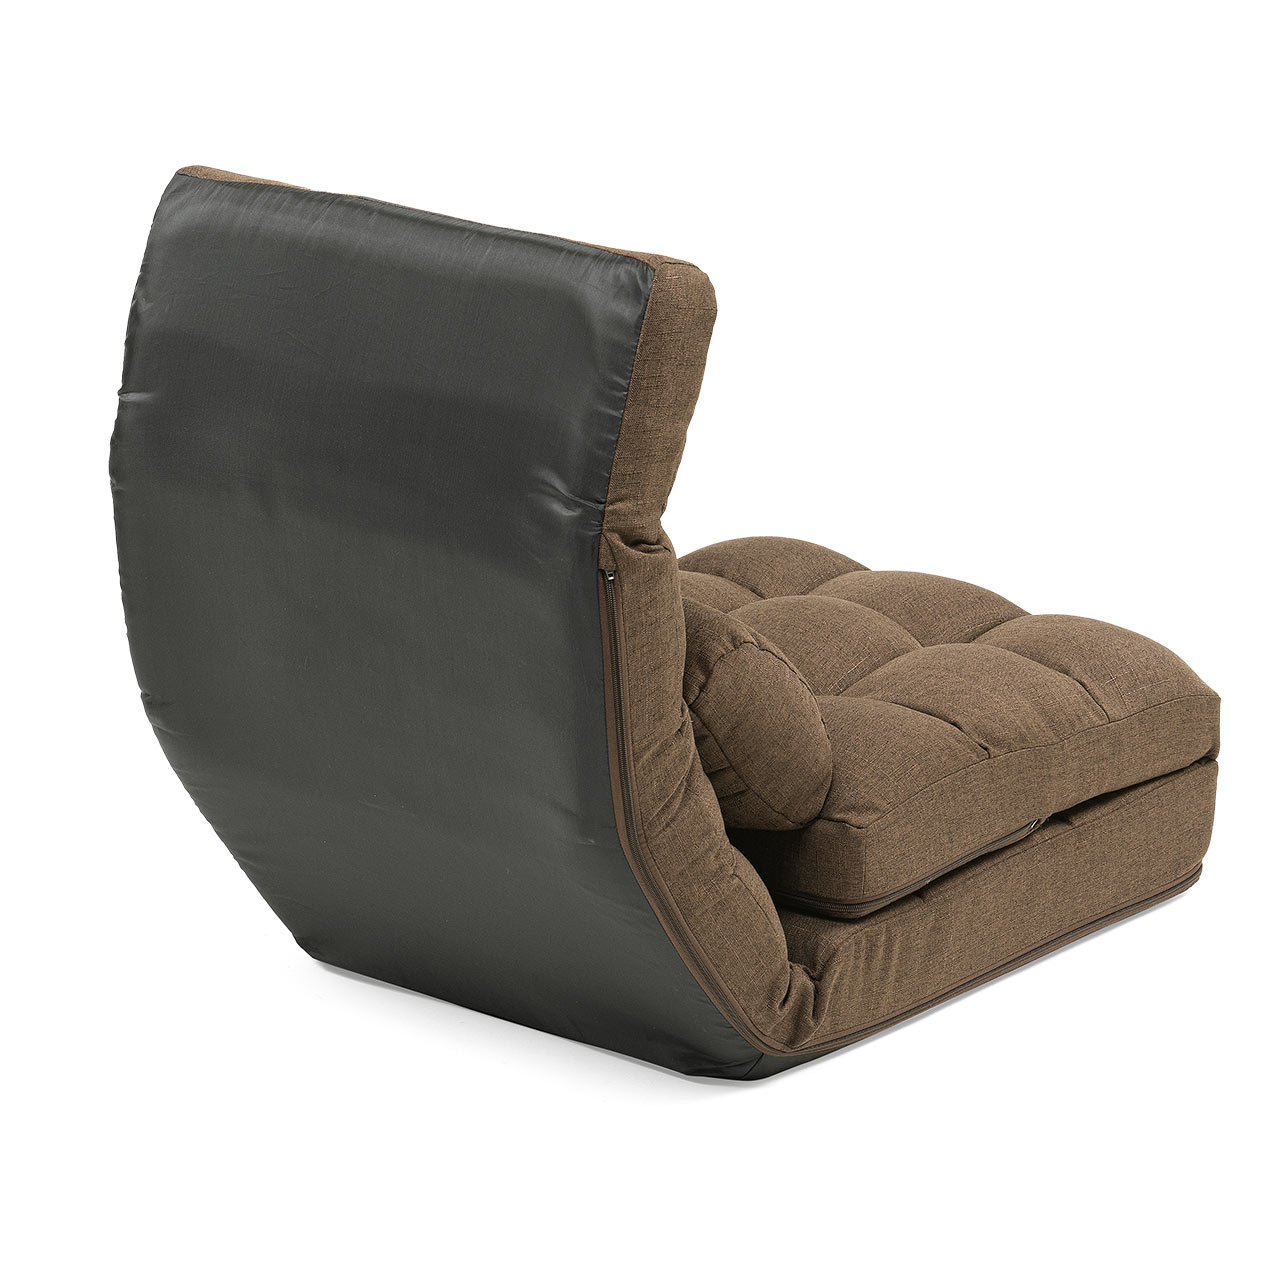 座椅子 座椅子ソファー ソファー ソファベッド 一人掛け シングル フロアチェア クッション付き リクライニング 14段階角度調節 ブラウン 150-SNCF16BR